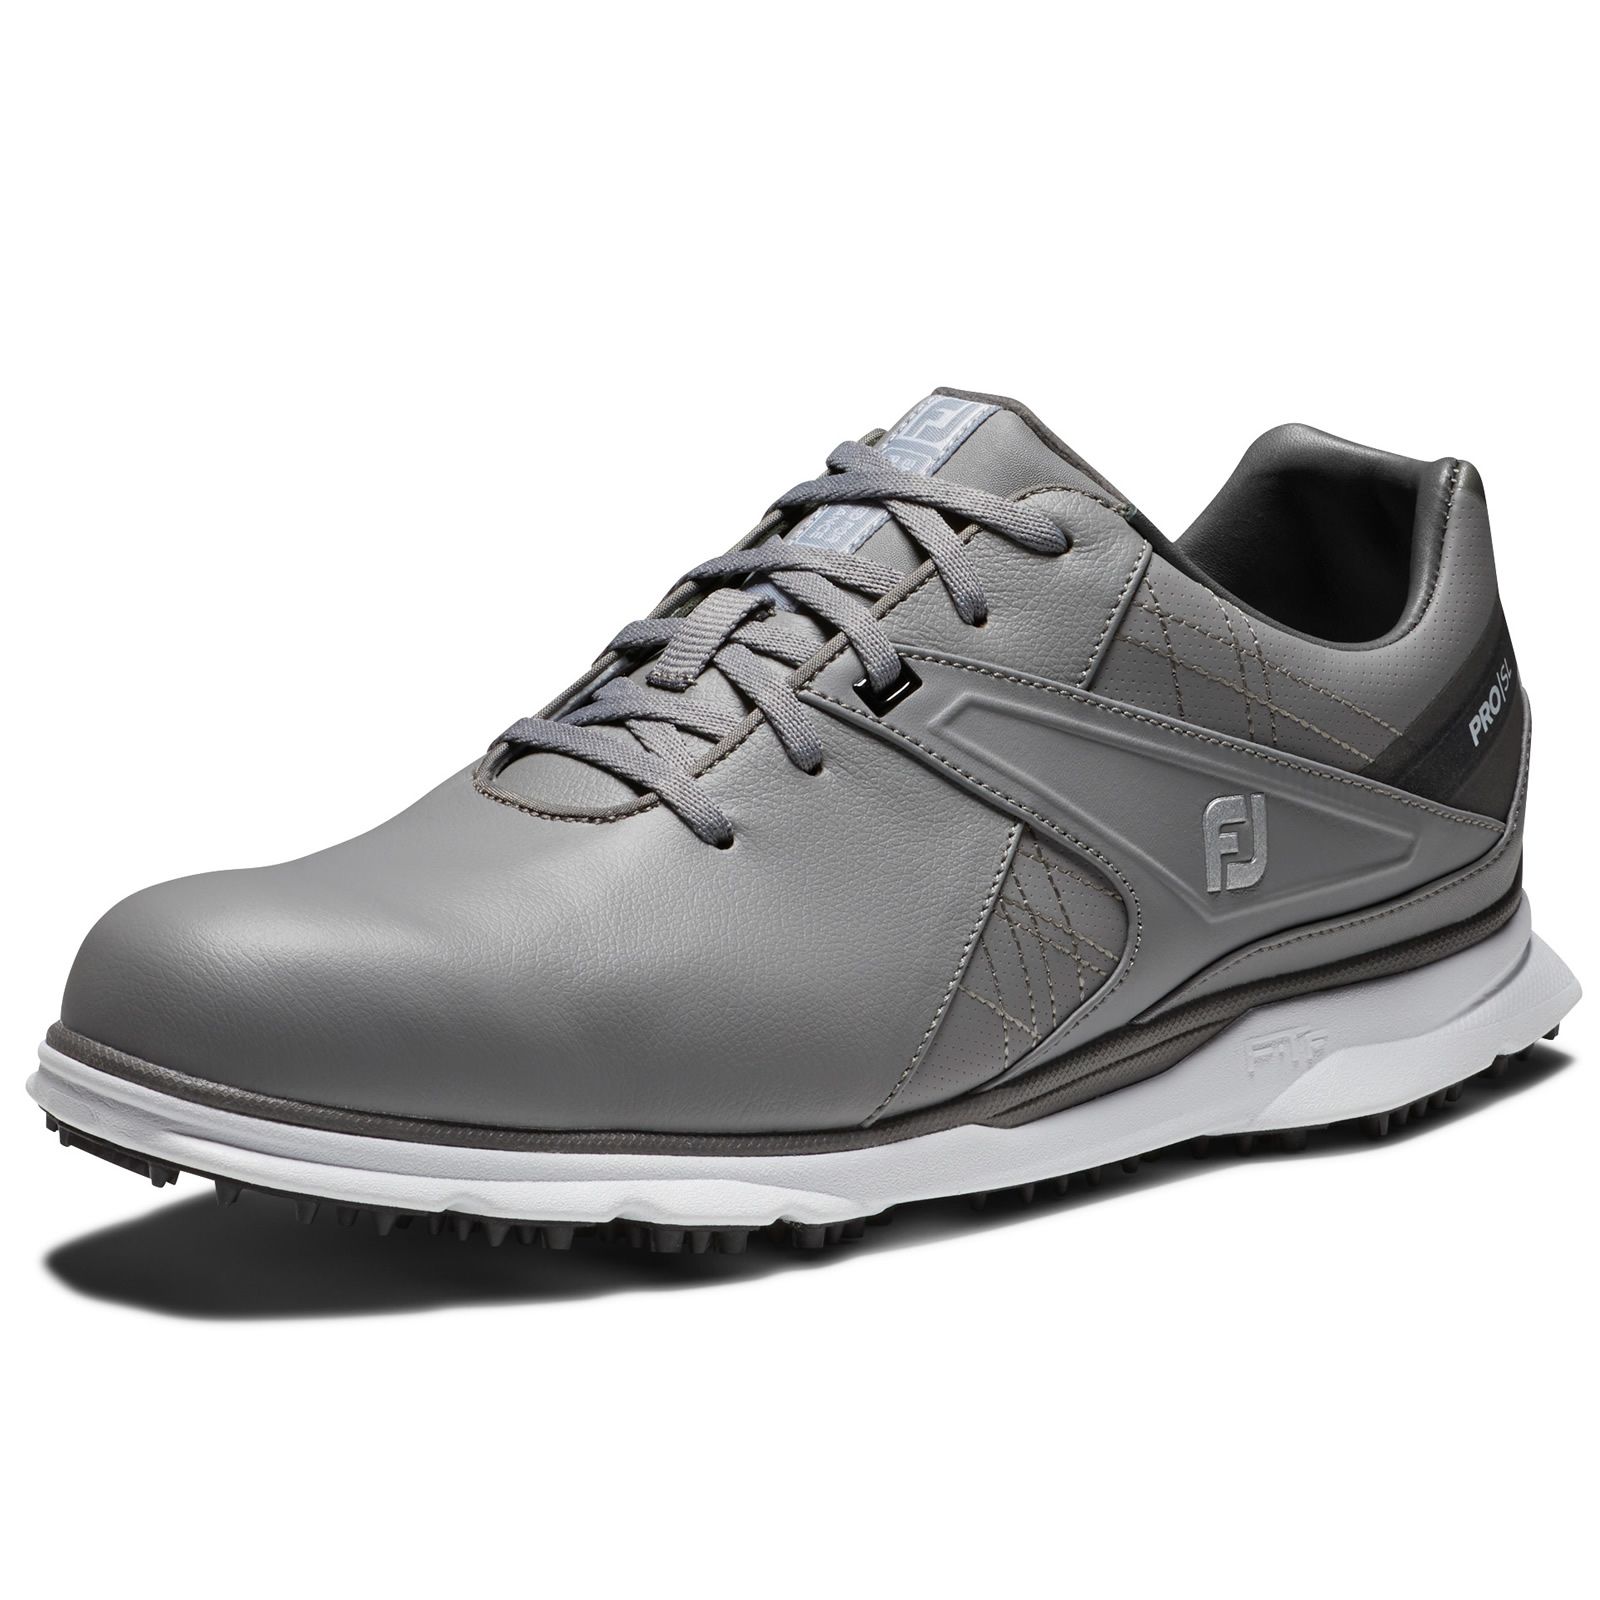 FootJoy Pro SL Golf Shoes #53847 Grey/White | Scottsdale Golf